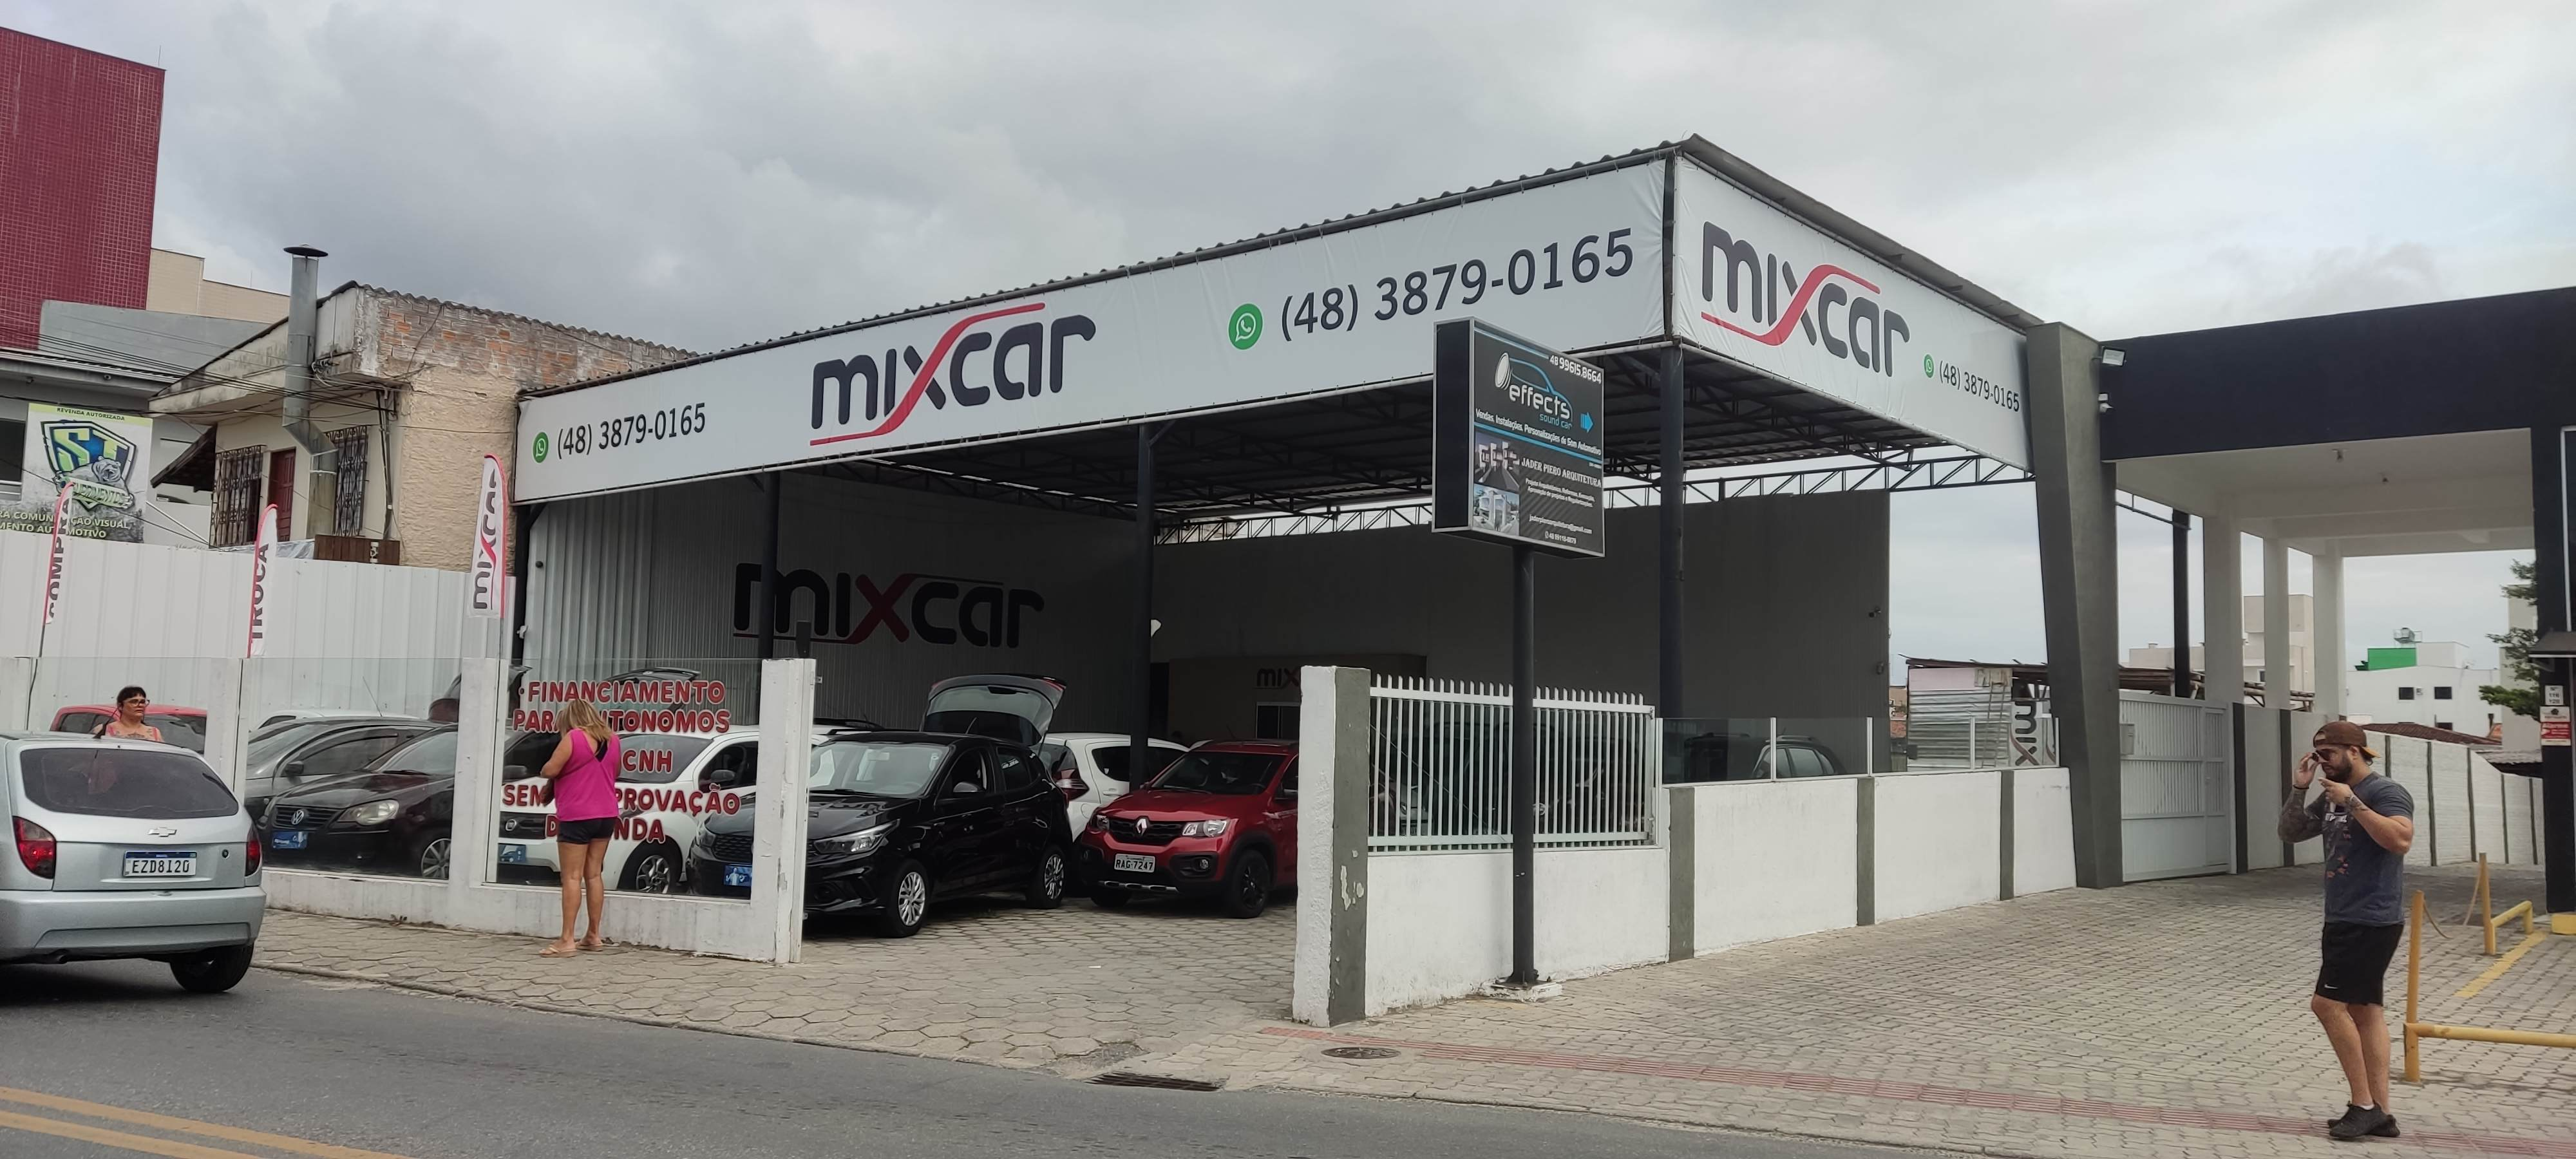 Fachada da loja Veículos à venda em Mixcar - Florianópolis - SC